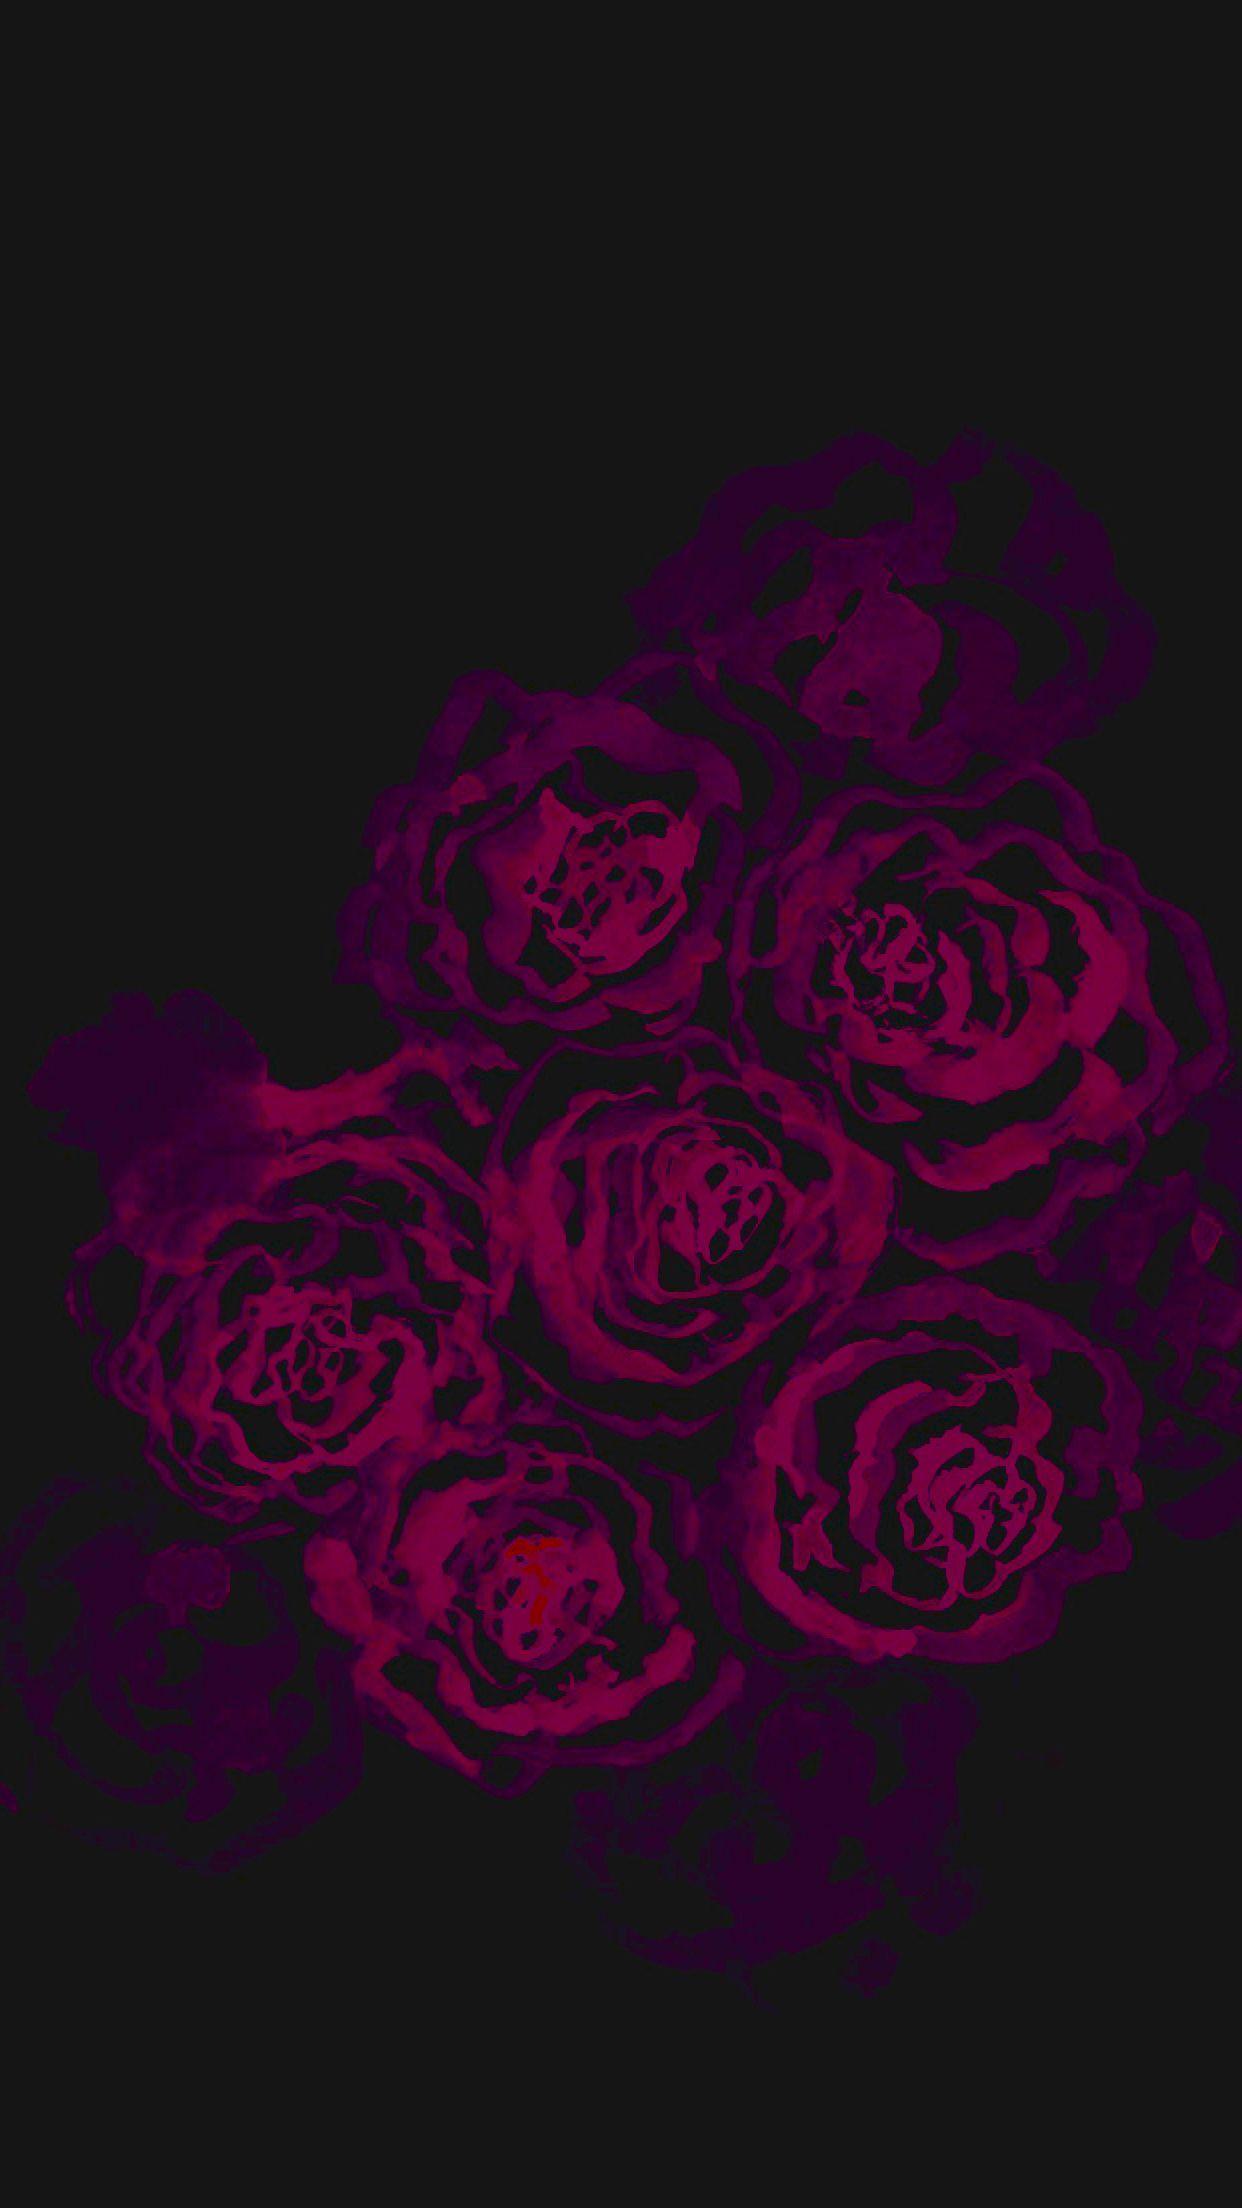 Black red magenta purple watercolour roses iphone wallpaper phone